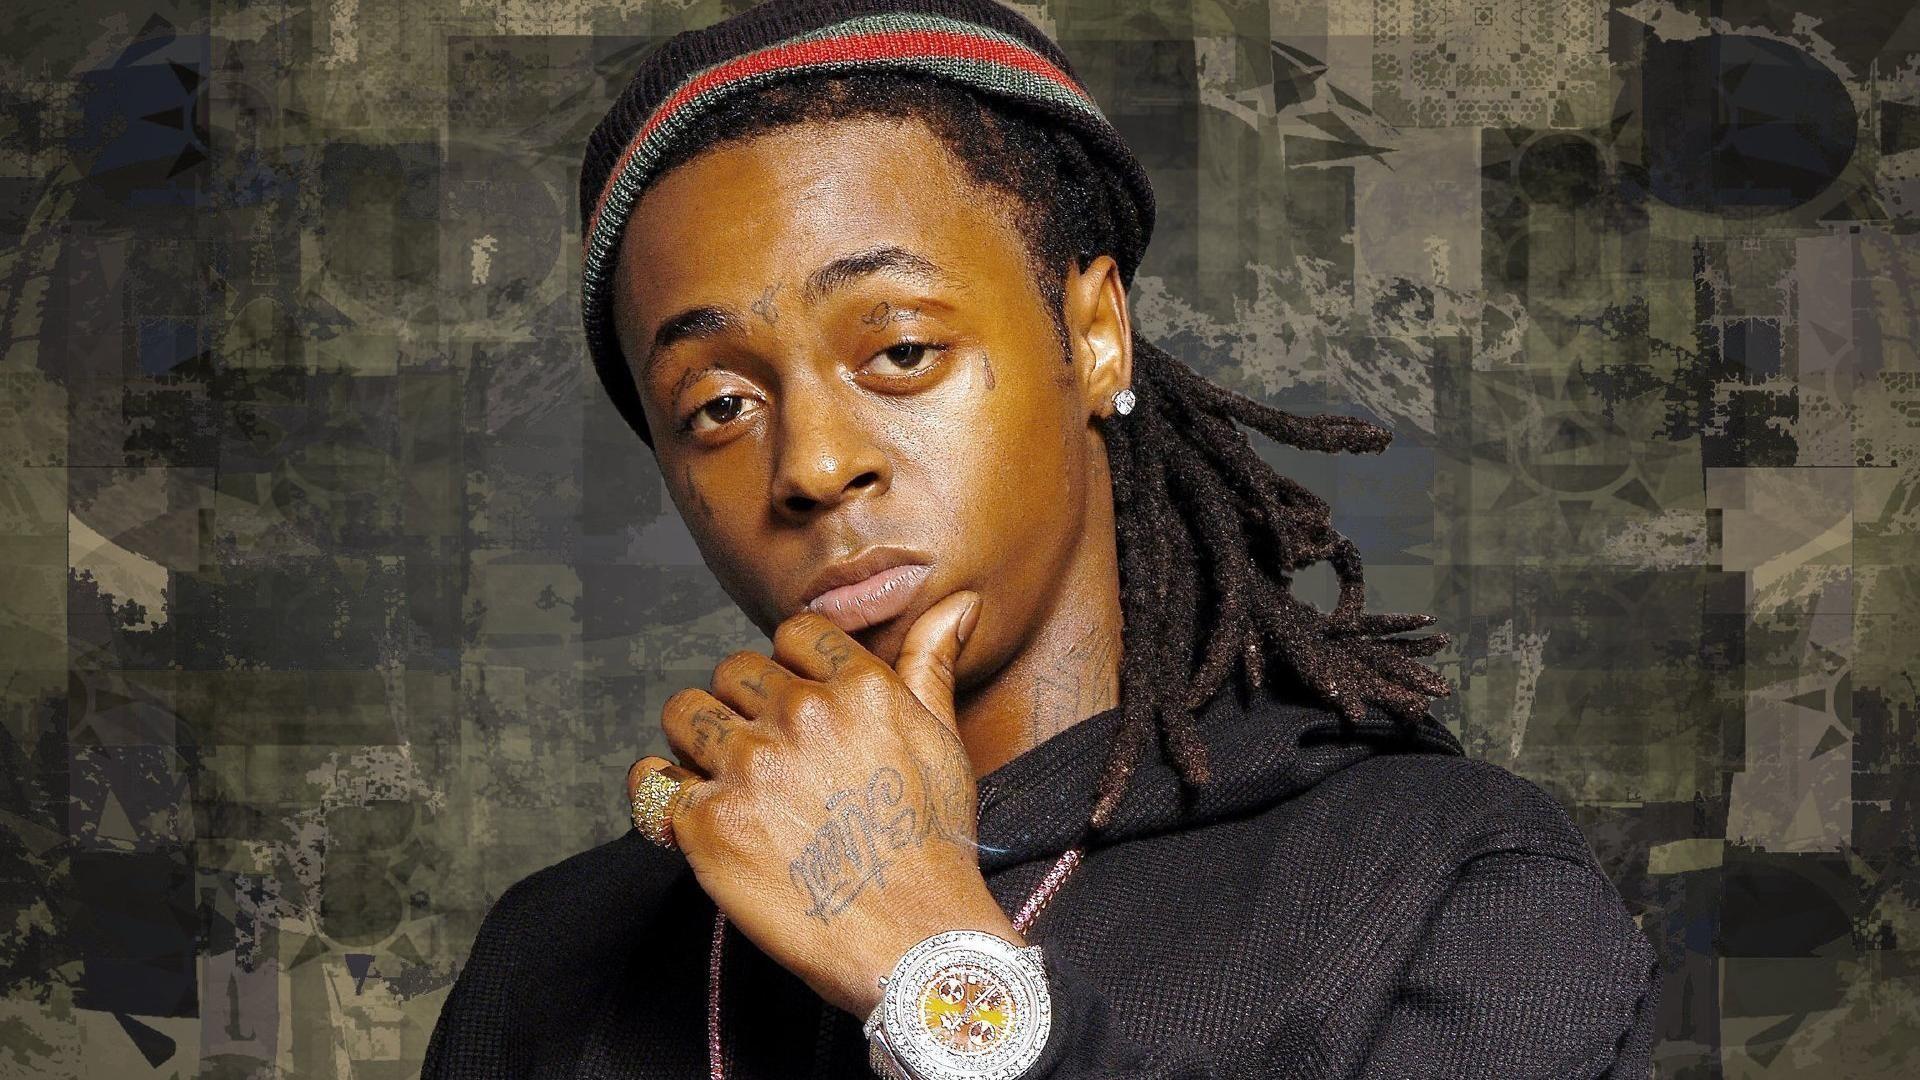 Lil Wayne Rapper Tattoo Wallpaper 1920x1080 px Free Download